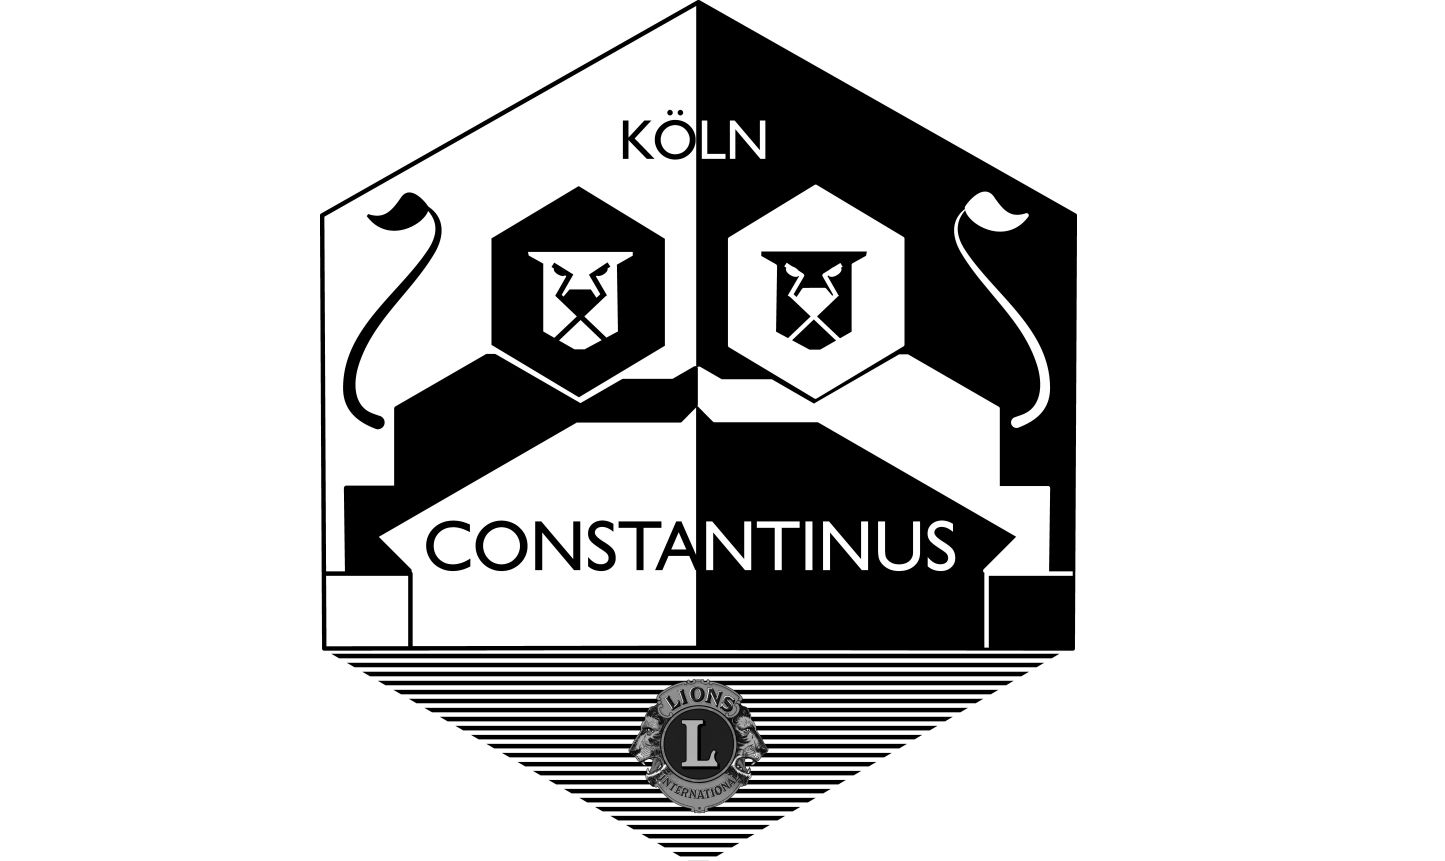 Loge des Lions Club Köln Constantinus